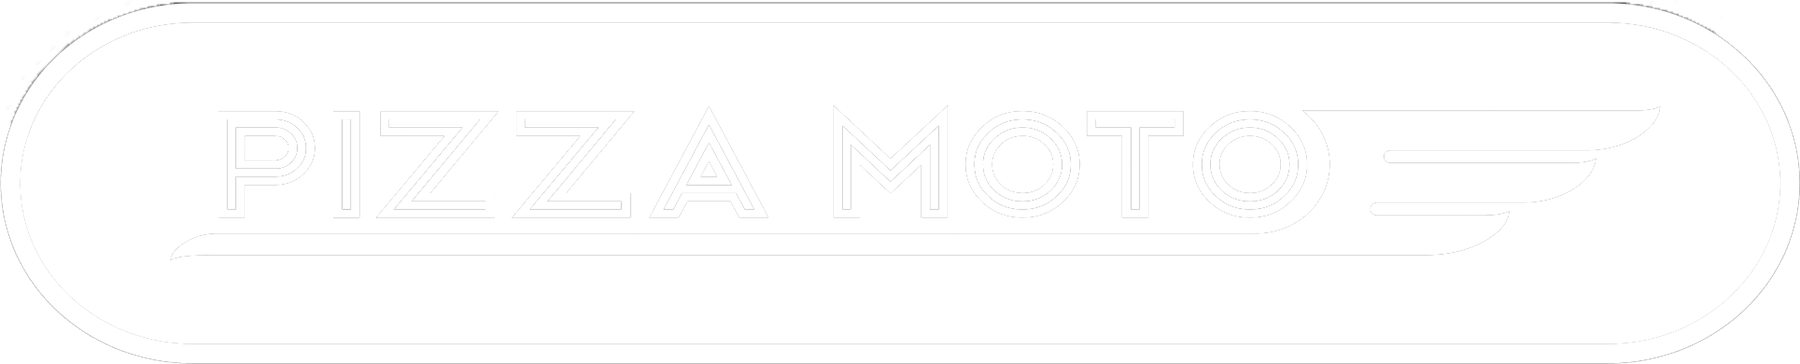 Pizza Moto Home